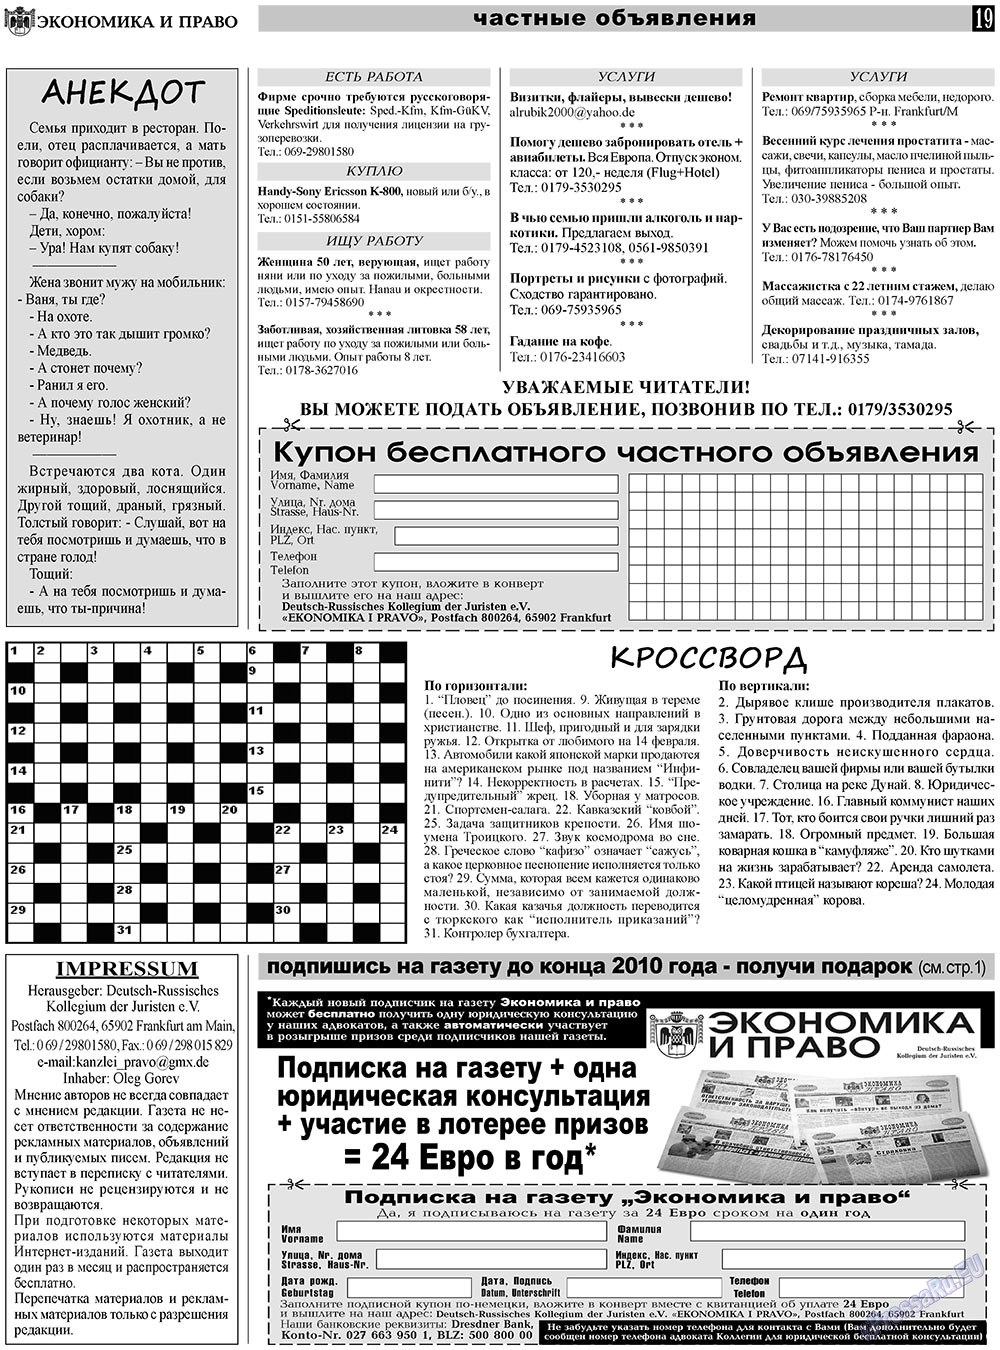 Экономика и право, газета. 2010 №11 стр.19